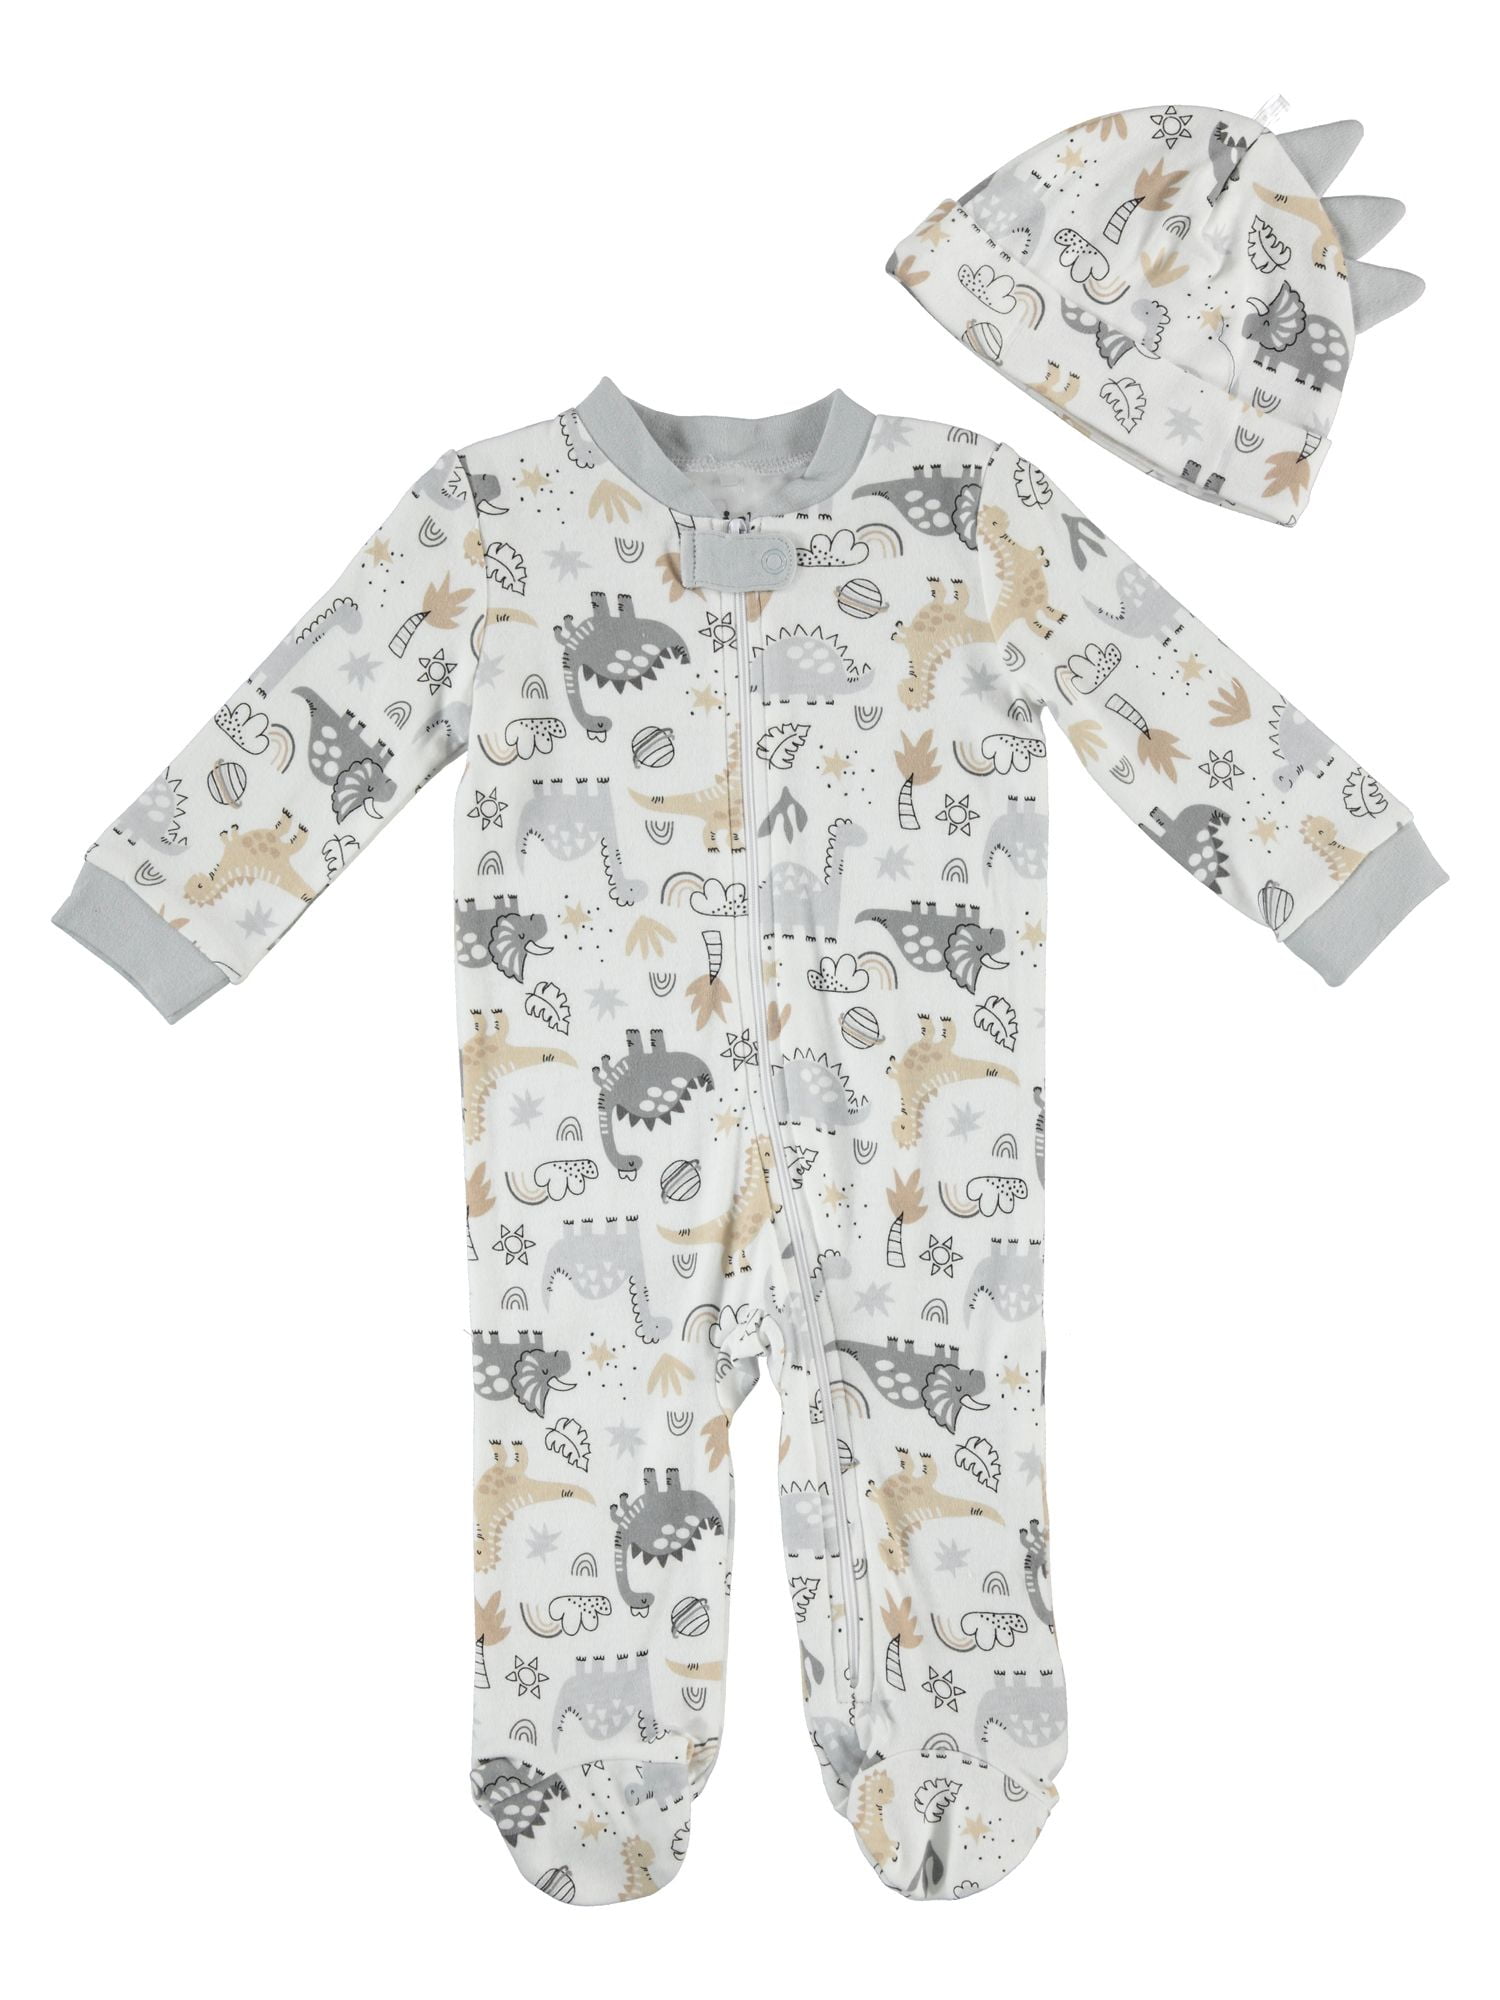 Baby grow Sleepsuit Vest Bib Scratch Mittens Cradle Cap 5 Piece Set Boy Girl 